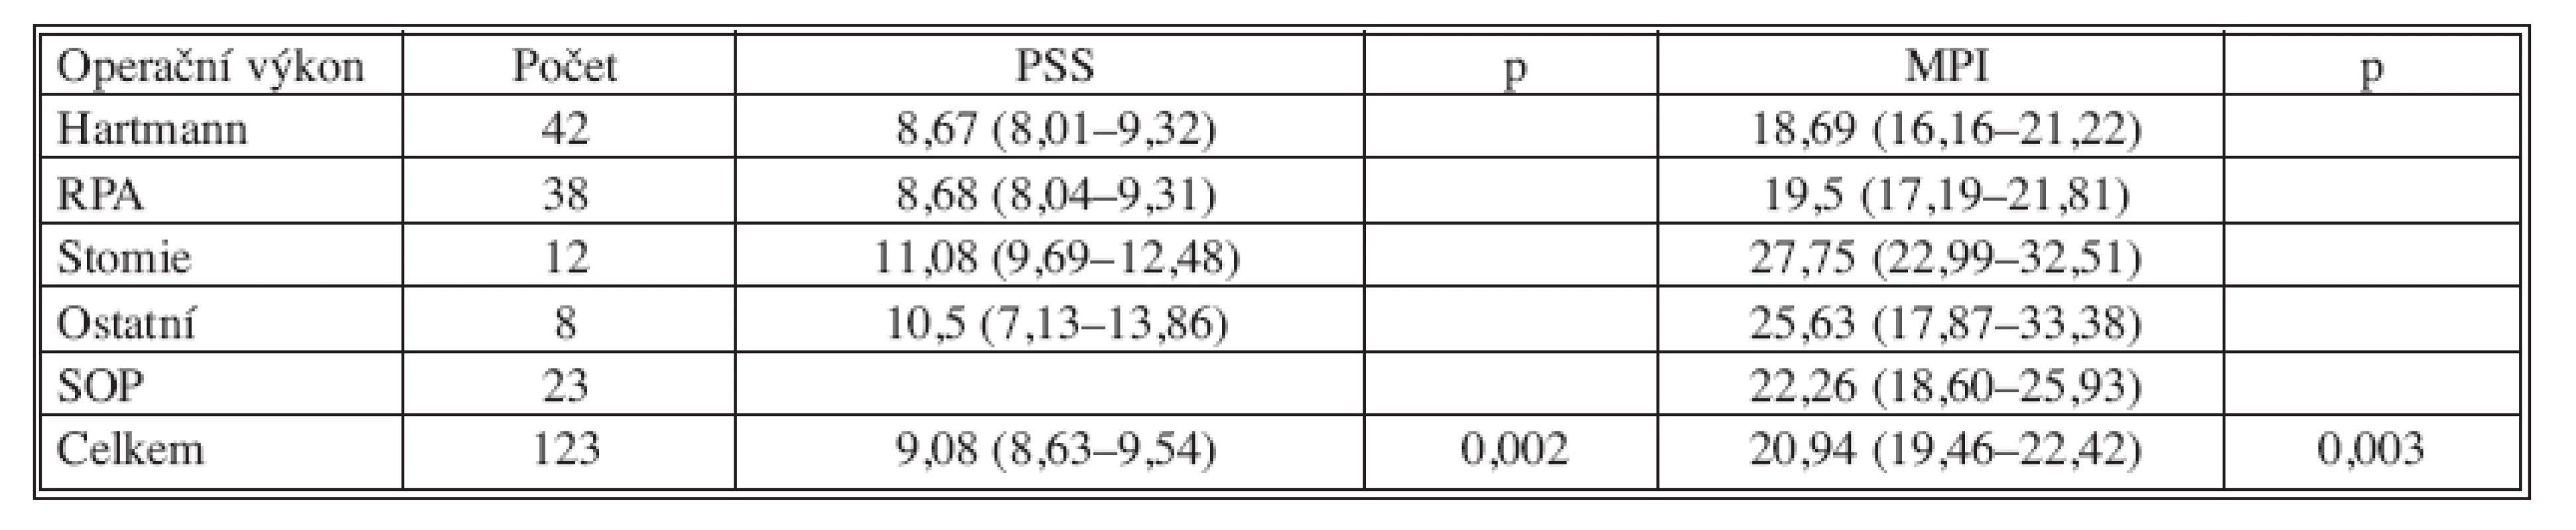 Analýza rozptylu hodnot klasifikačních systémů pro operační výkony (test ANOVA) 
Tab. 10. Mean PSS and MPI scores according to type of surgery (ANOVA)